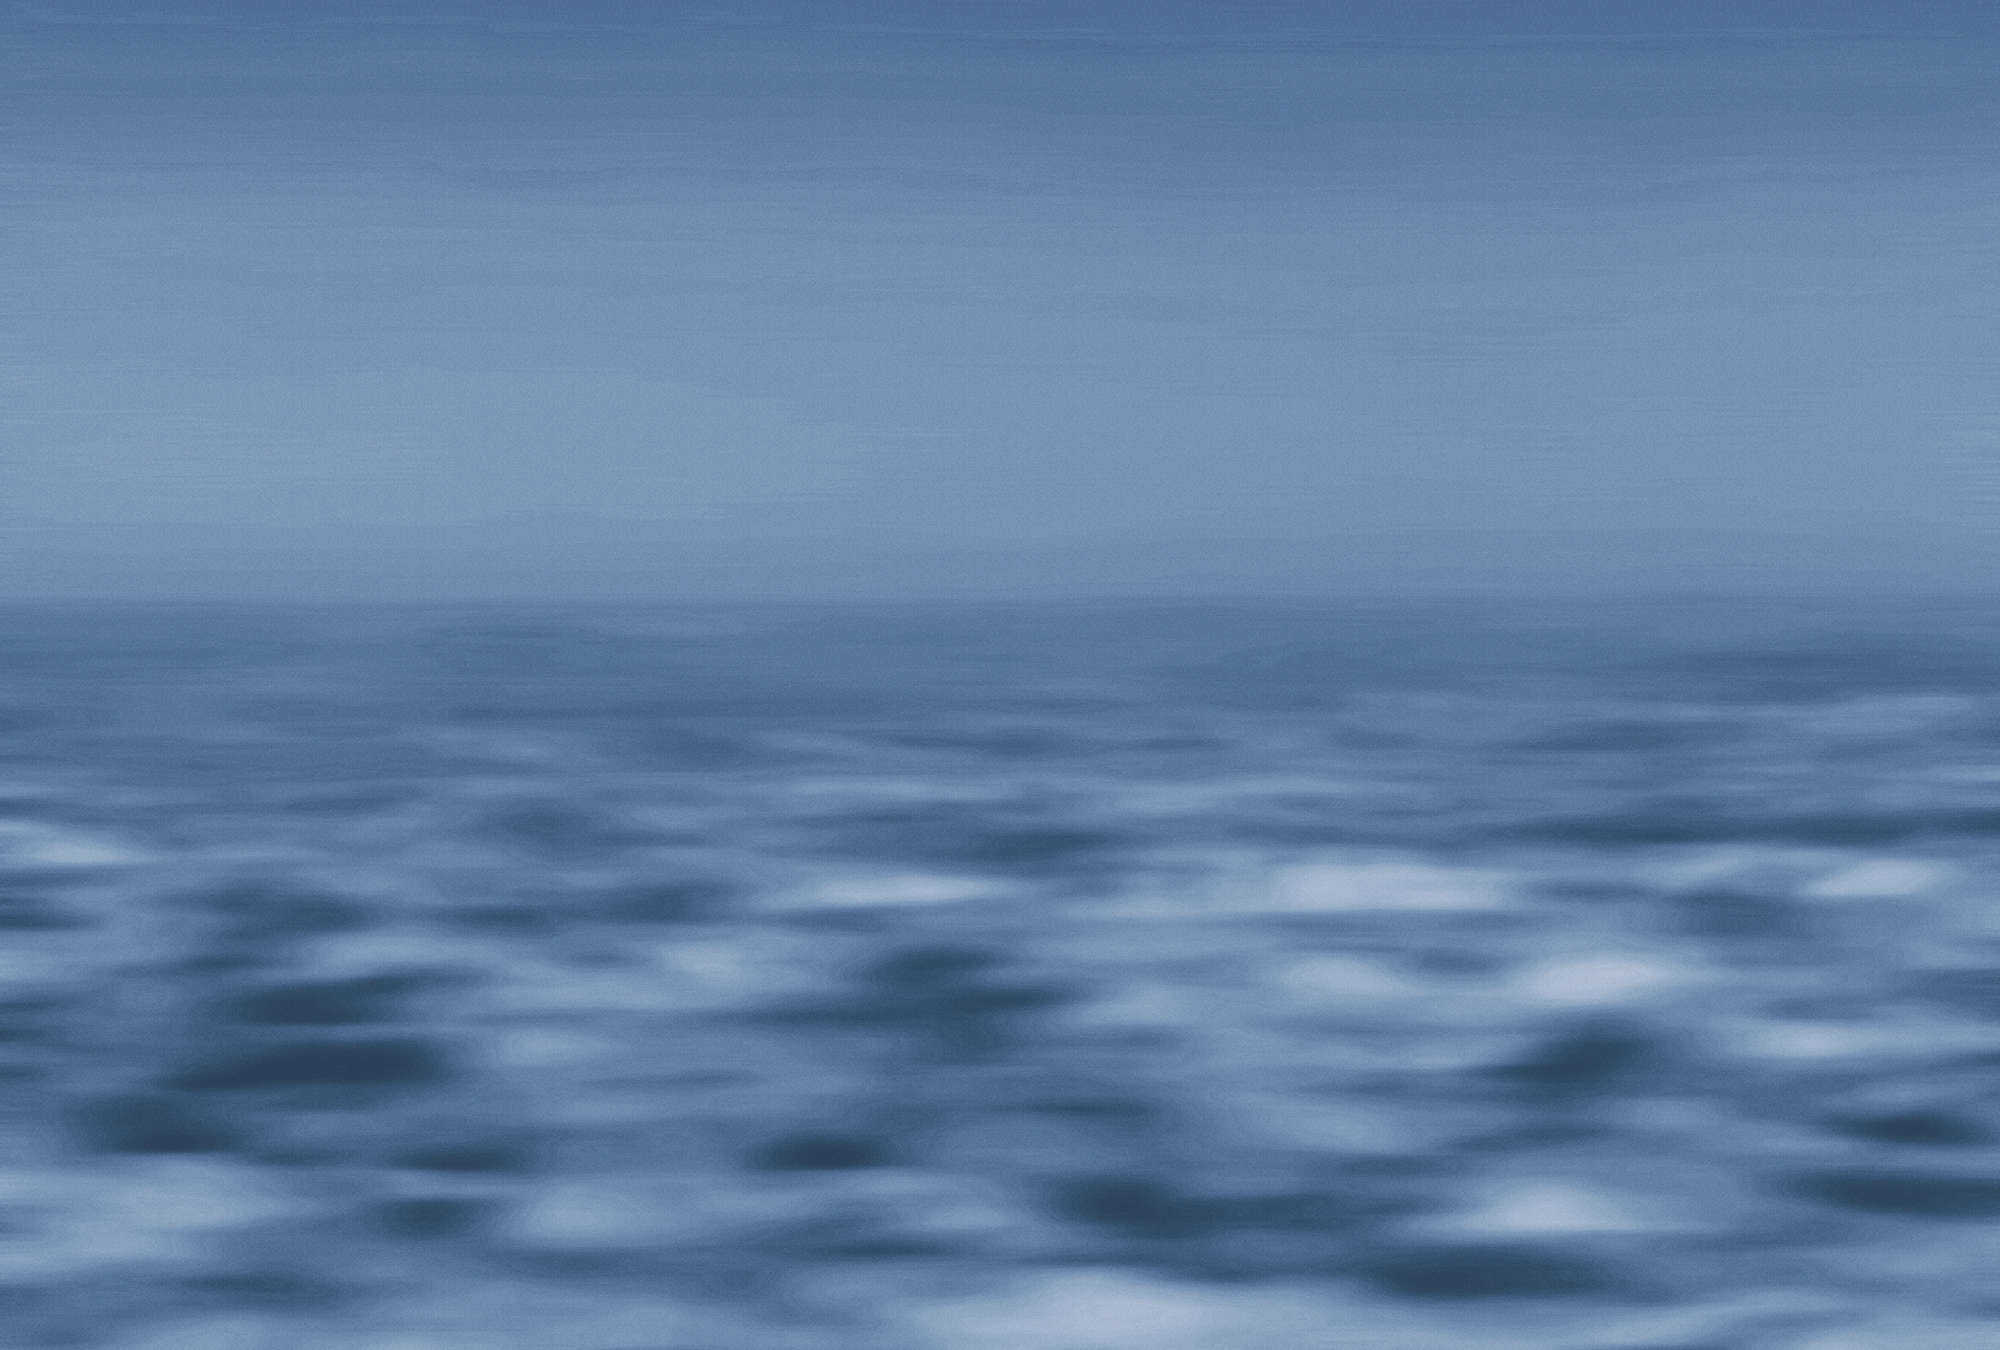             Papel pintado marítimo mar, mundo acuático abstracto - azul, blanco
        